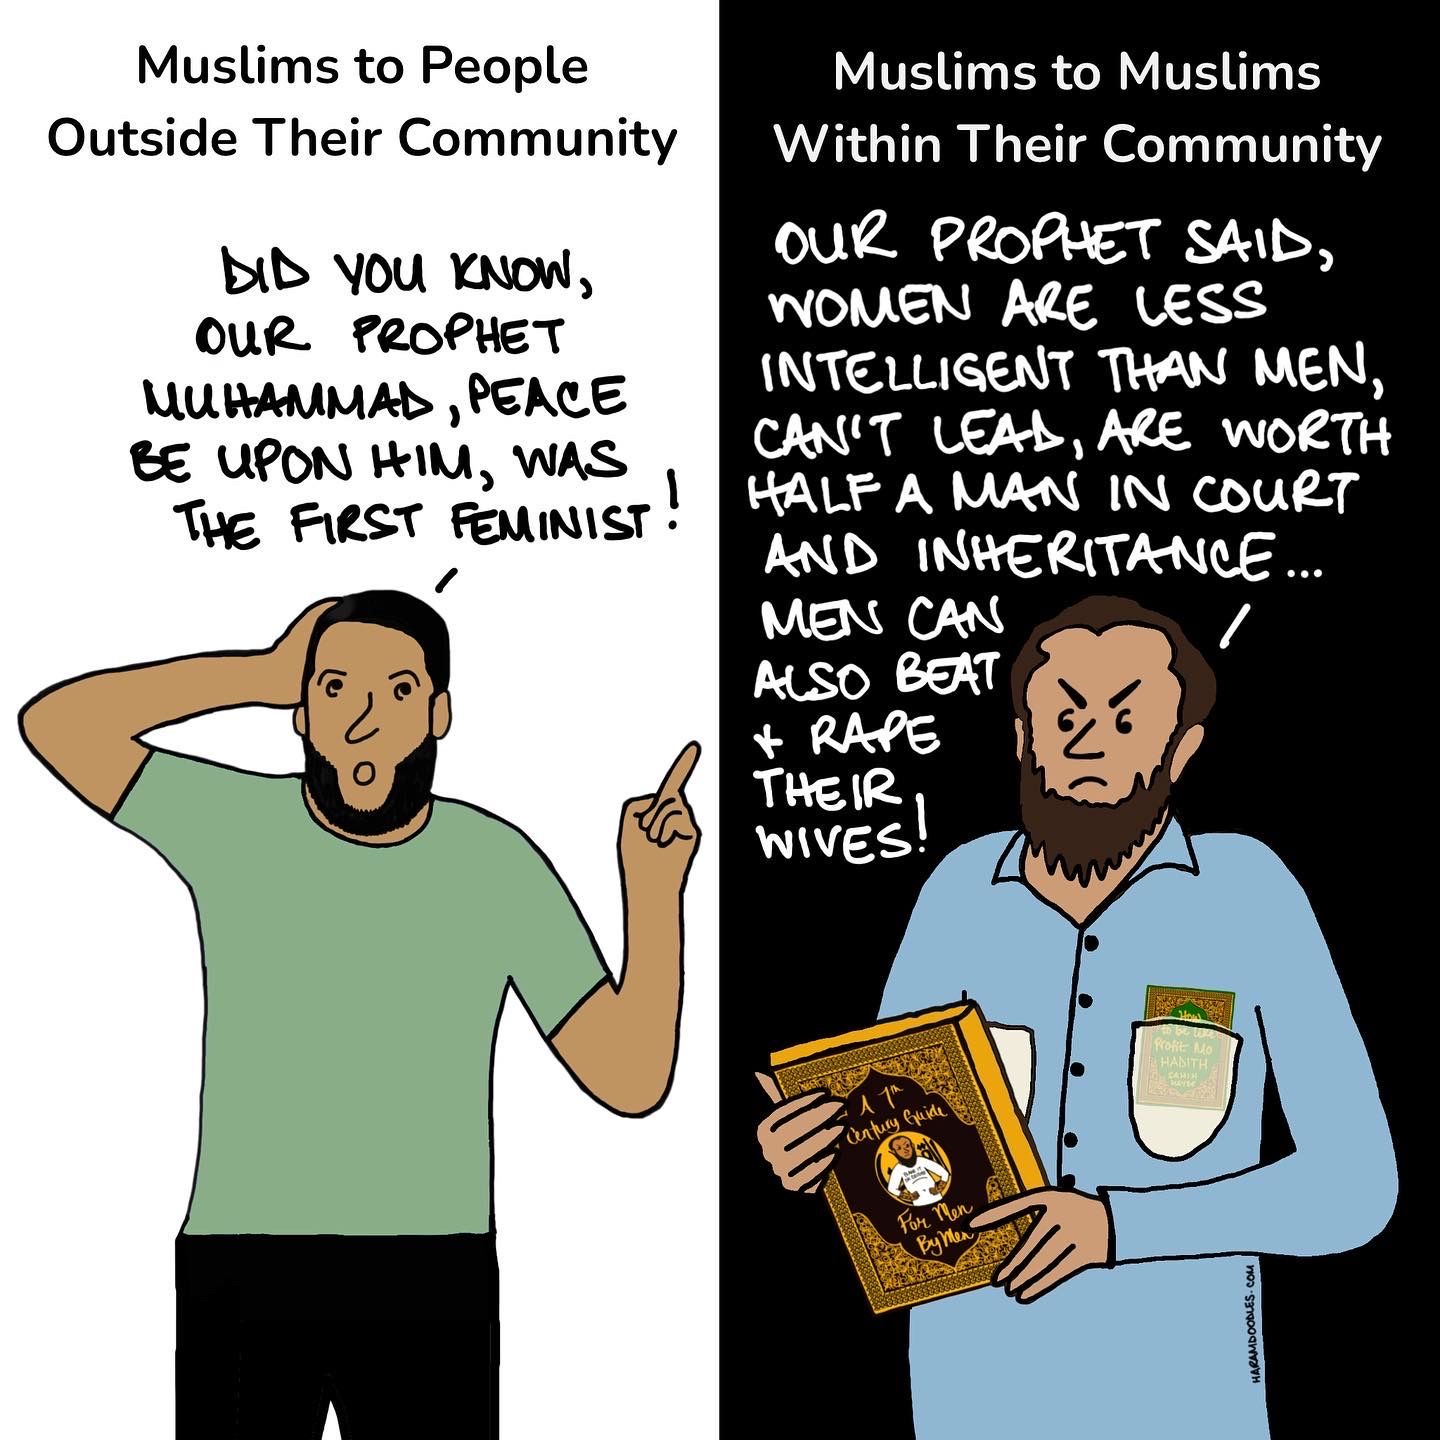 Islam in Public vs. Private